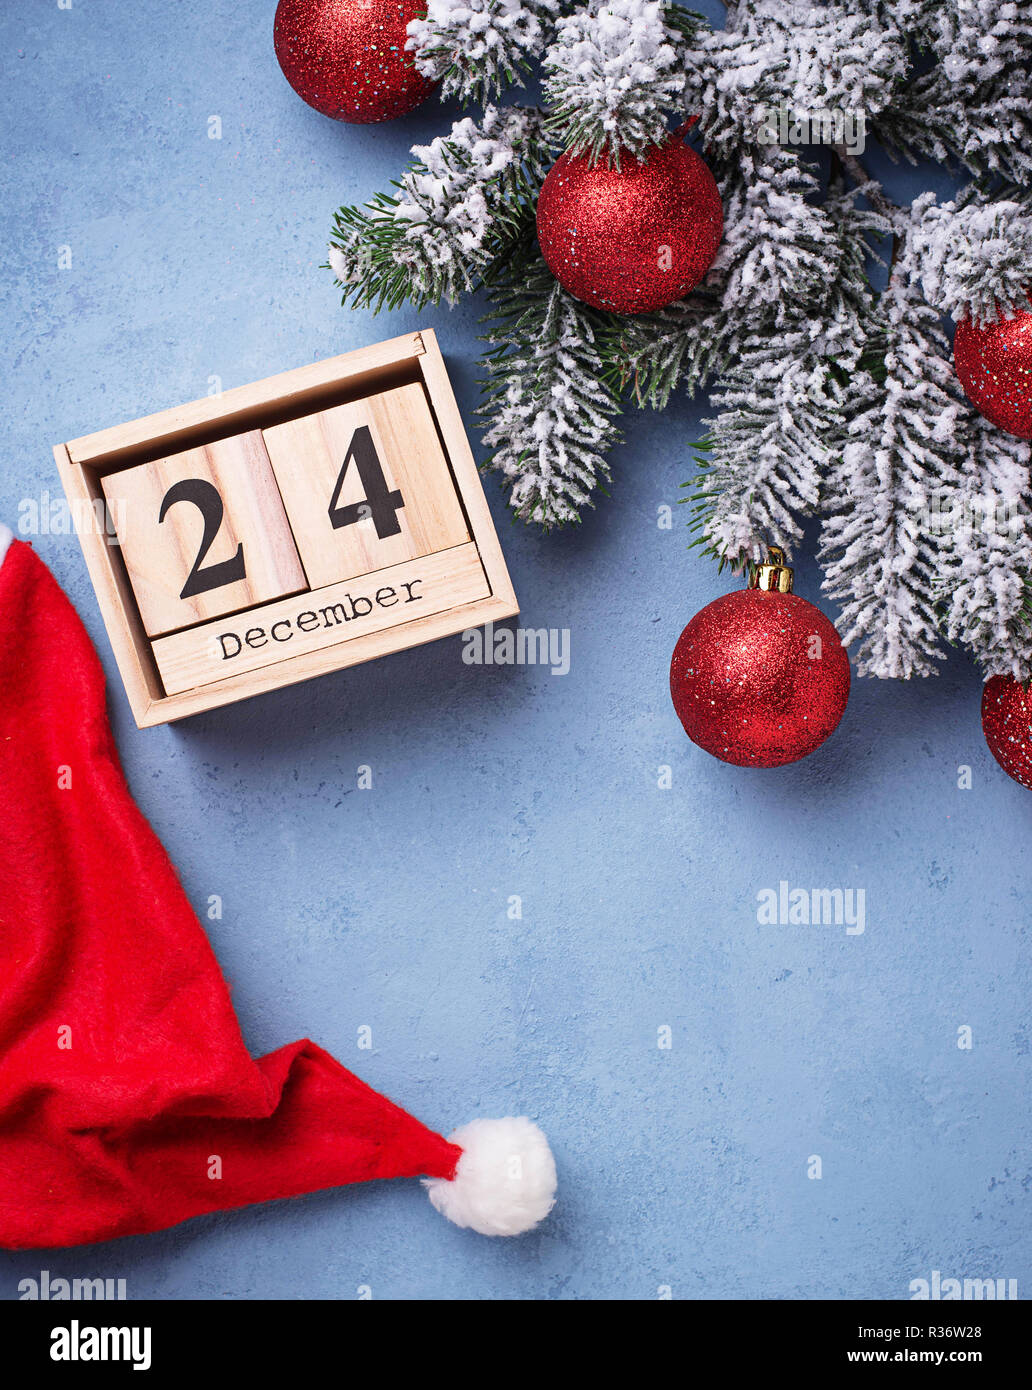 24 Dicembre sul calendario di legno. Concetto di vigilia di Natale Foto Stock